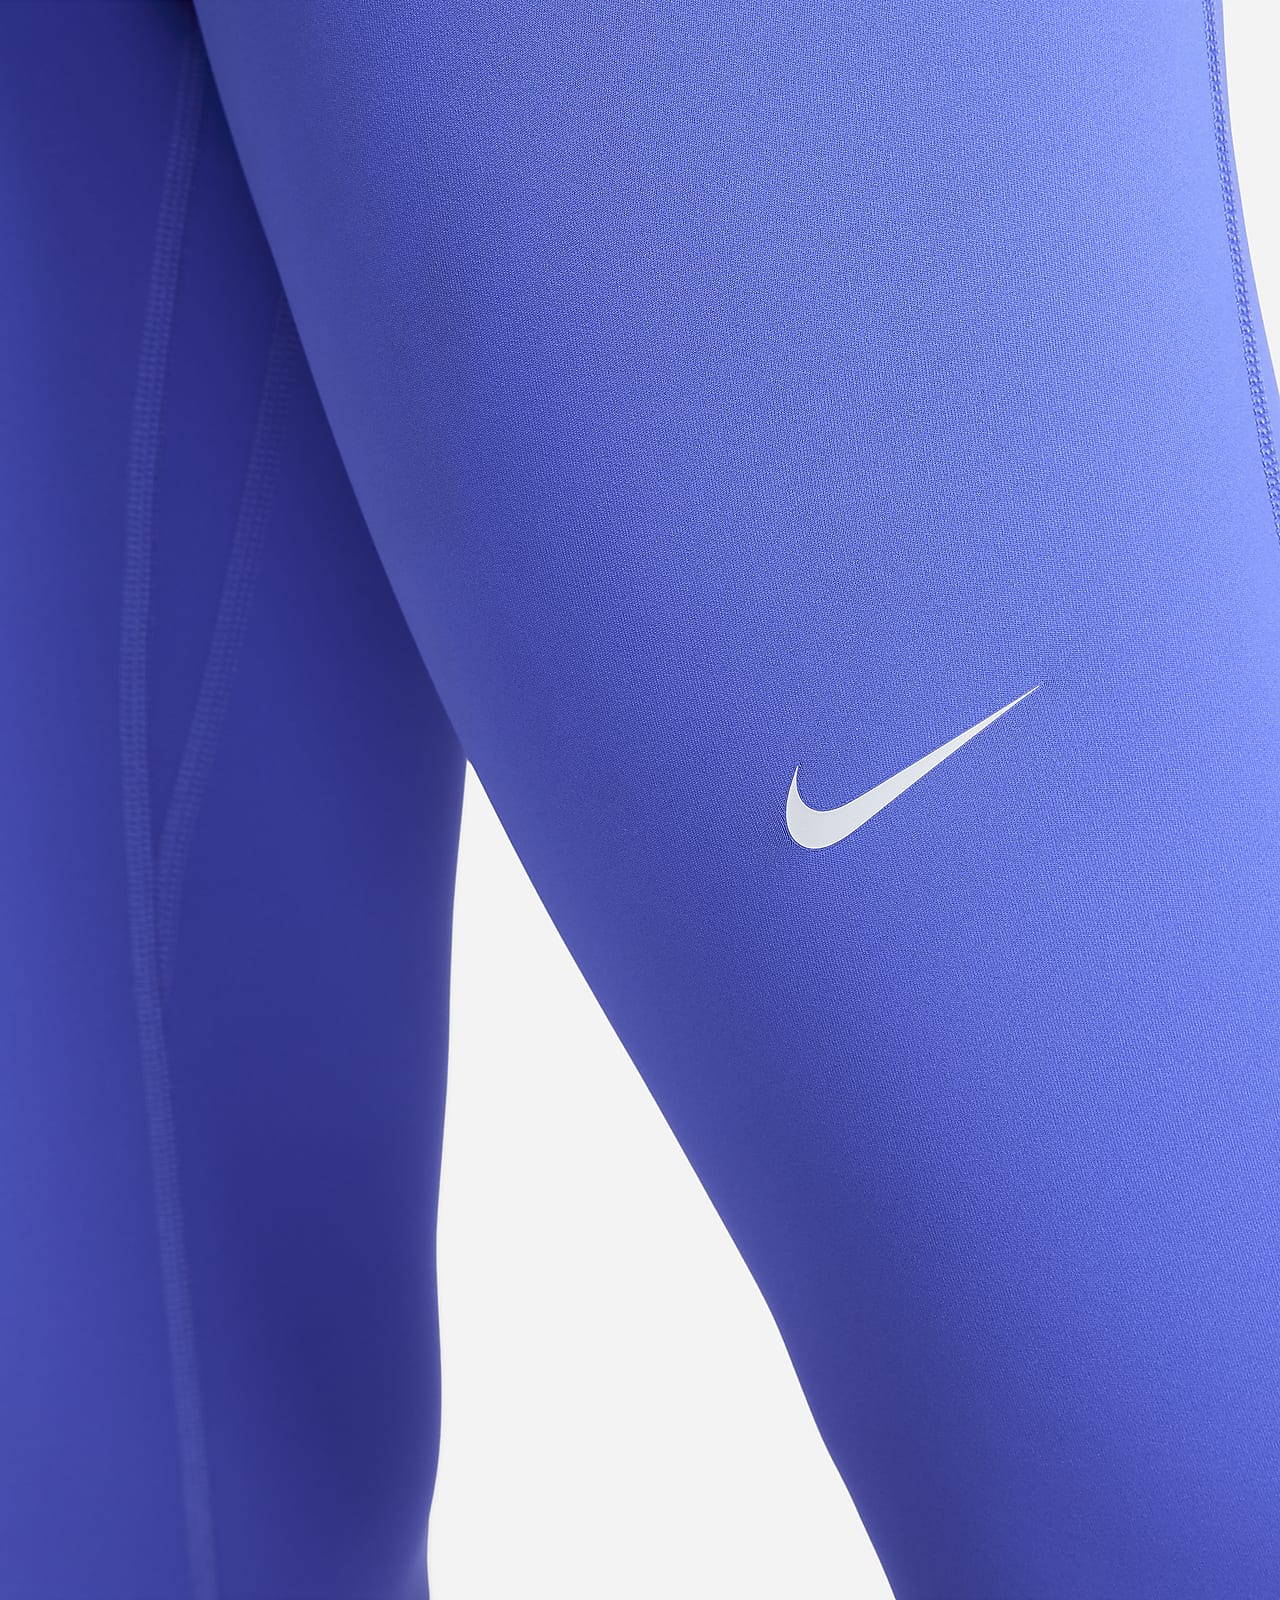 NIKE Nike PRO SCULPT LUX - Leggings - Women's - black/clear